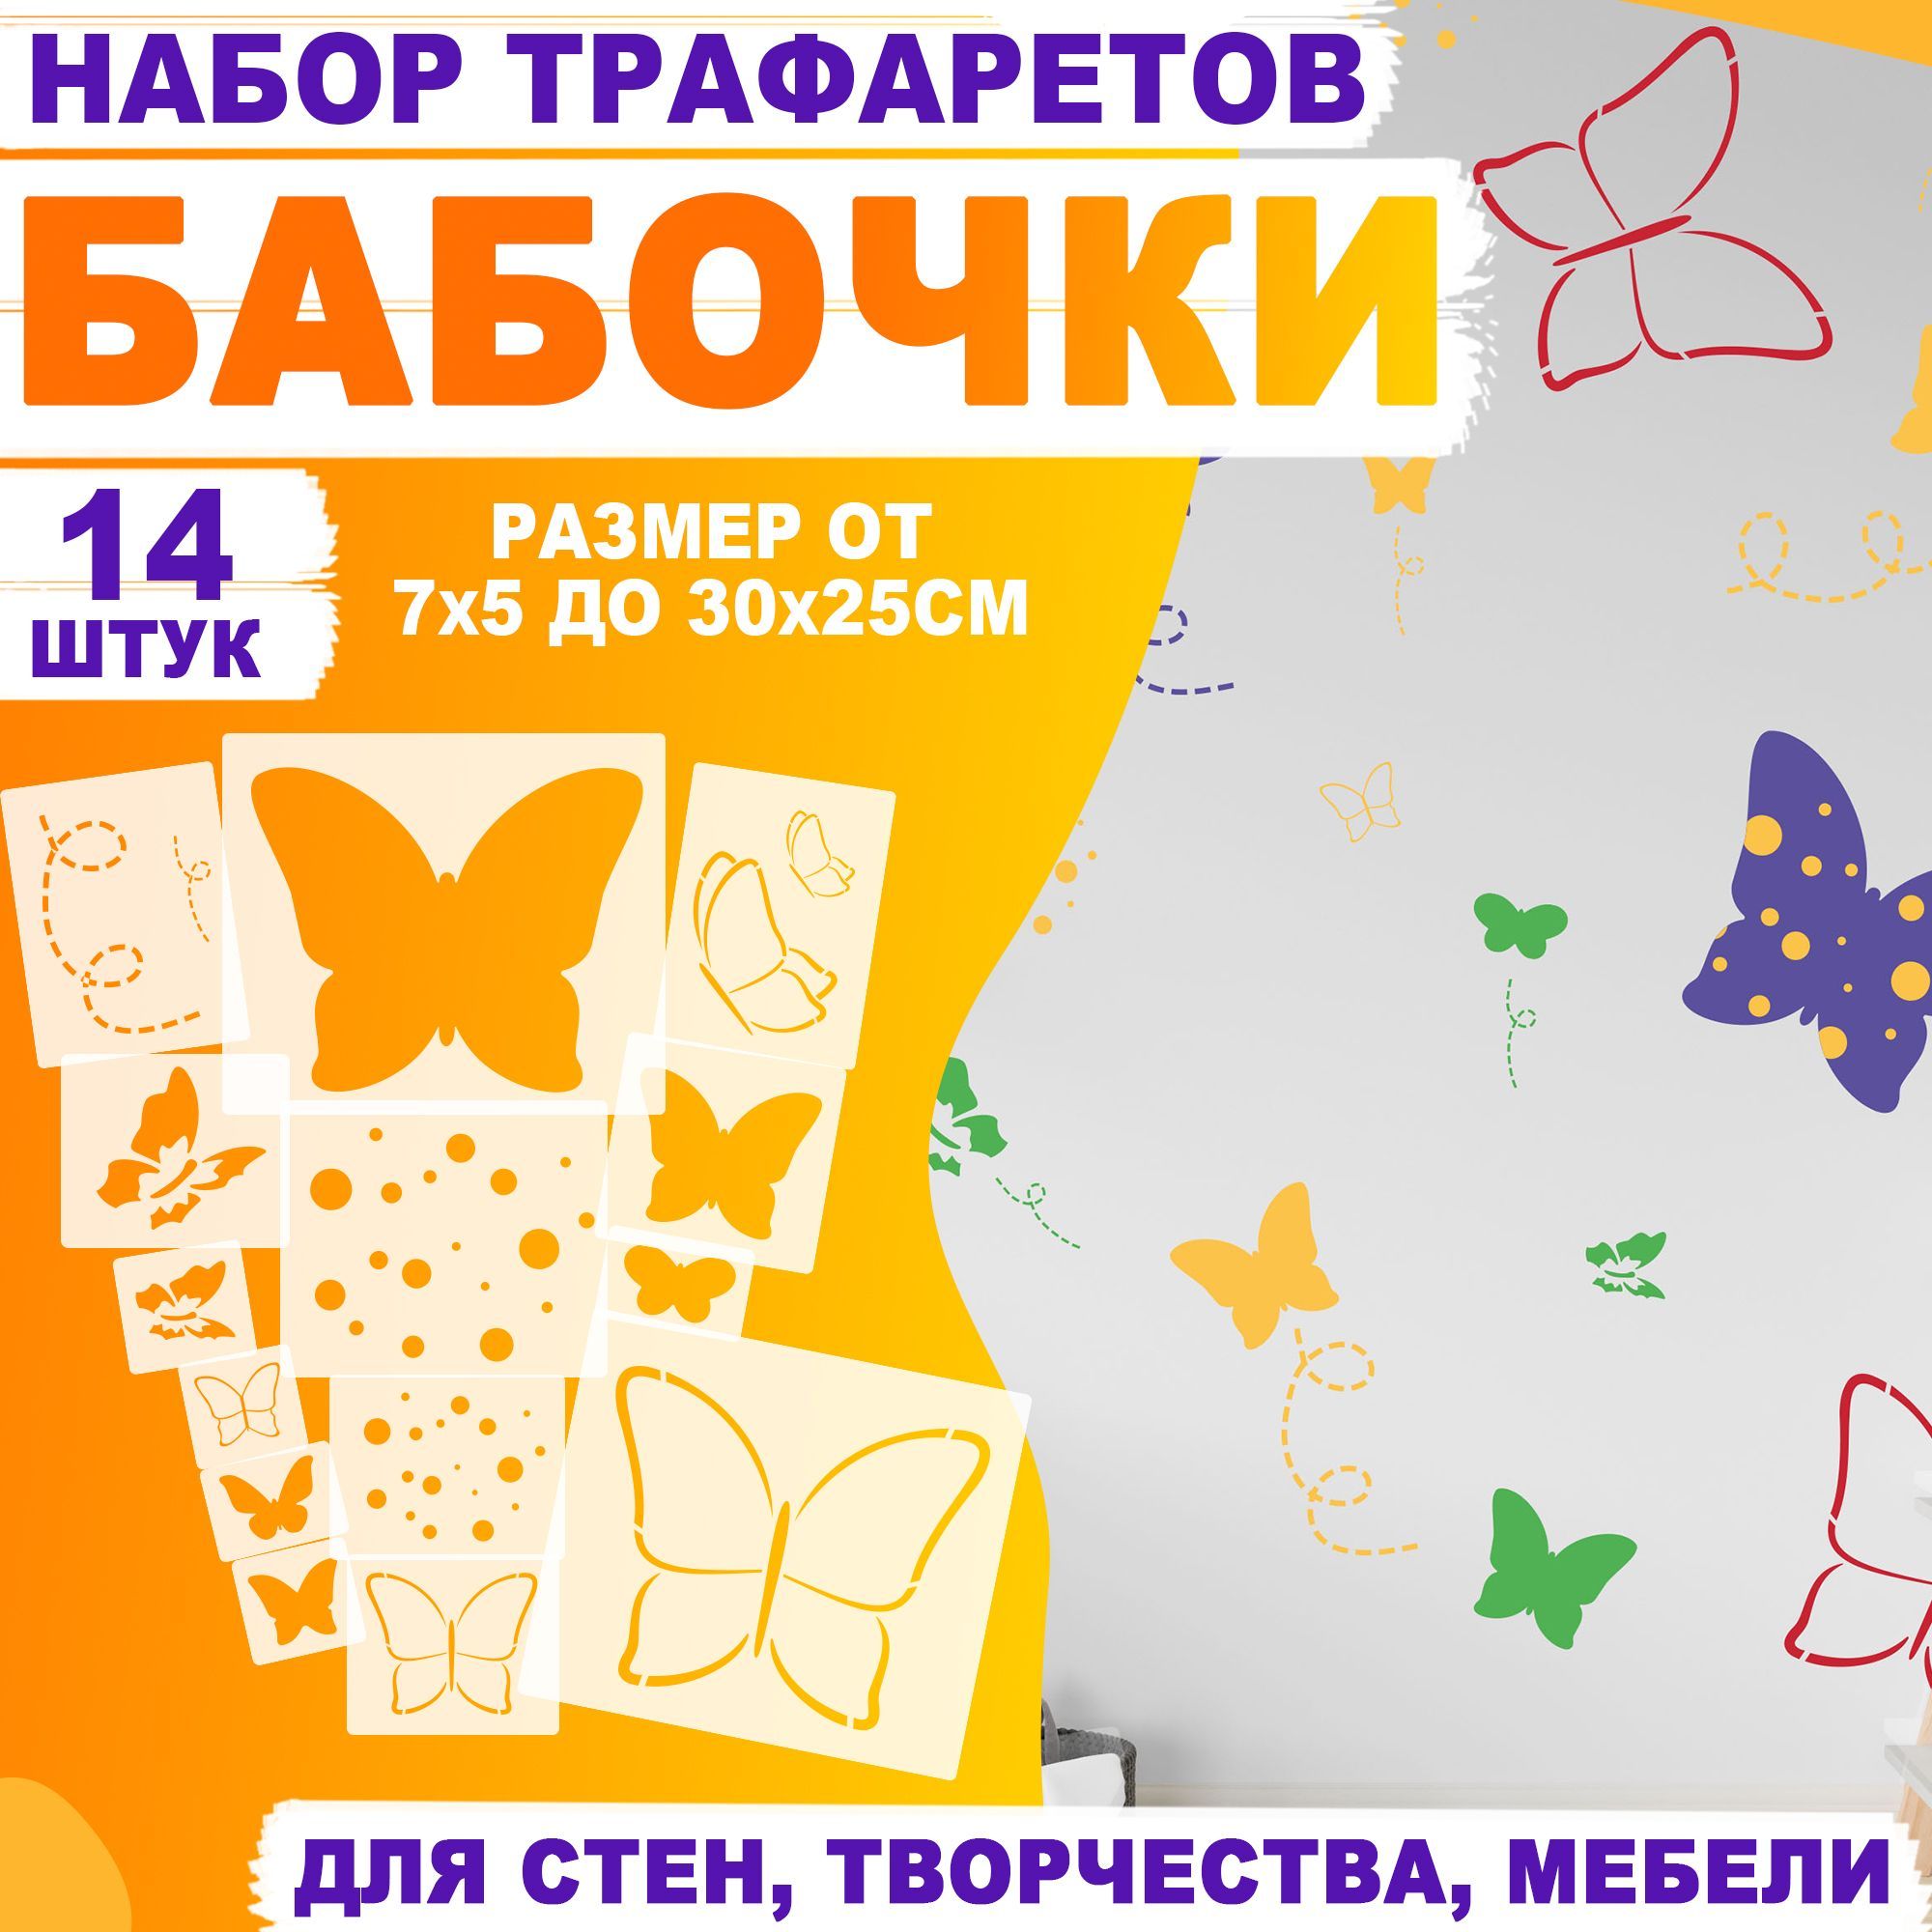 Трафареты - купить в Минске